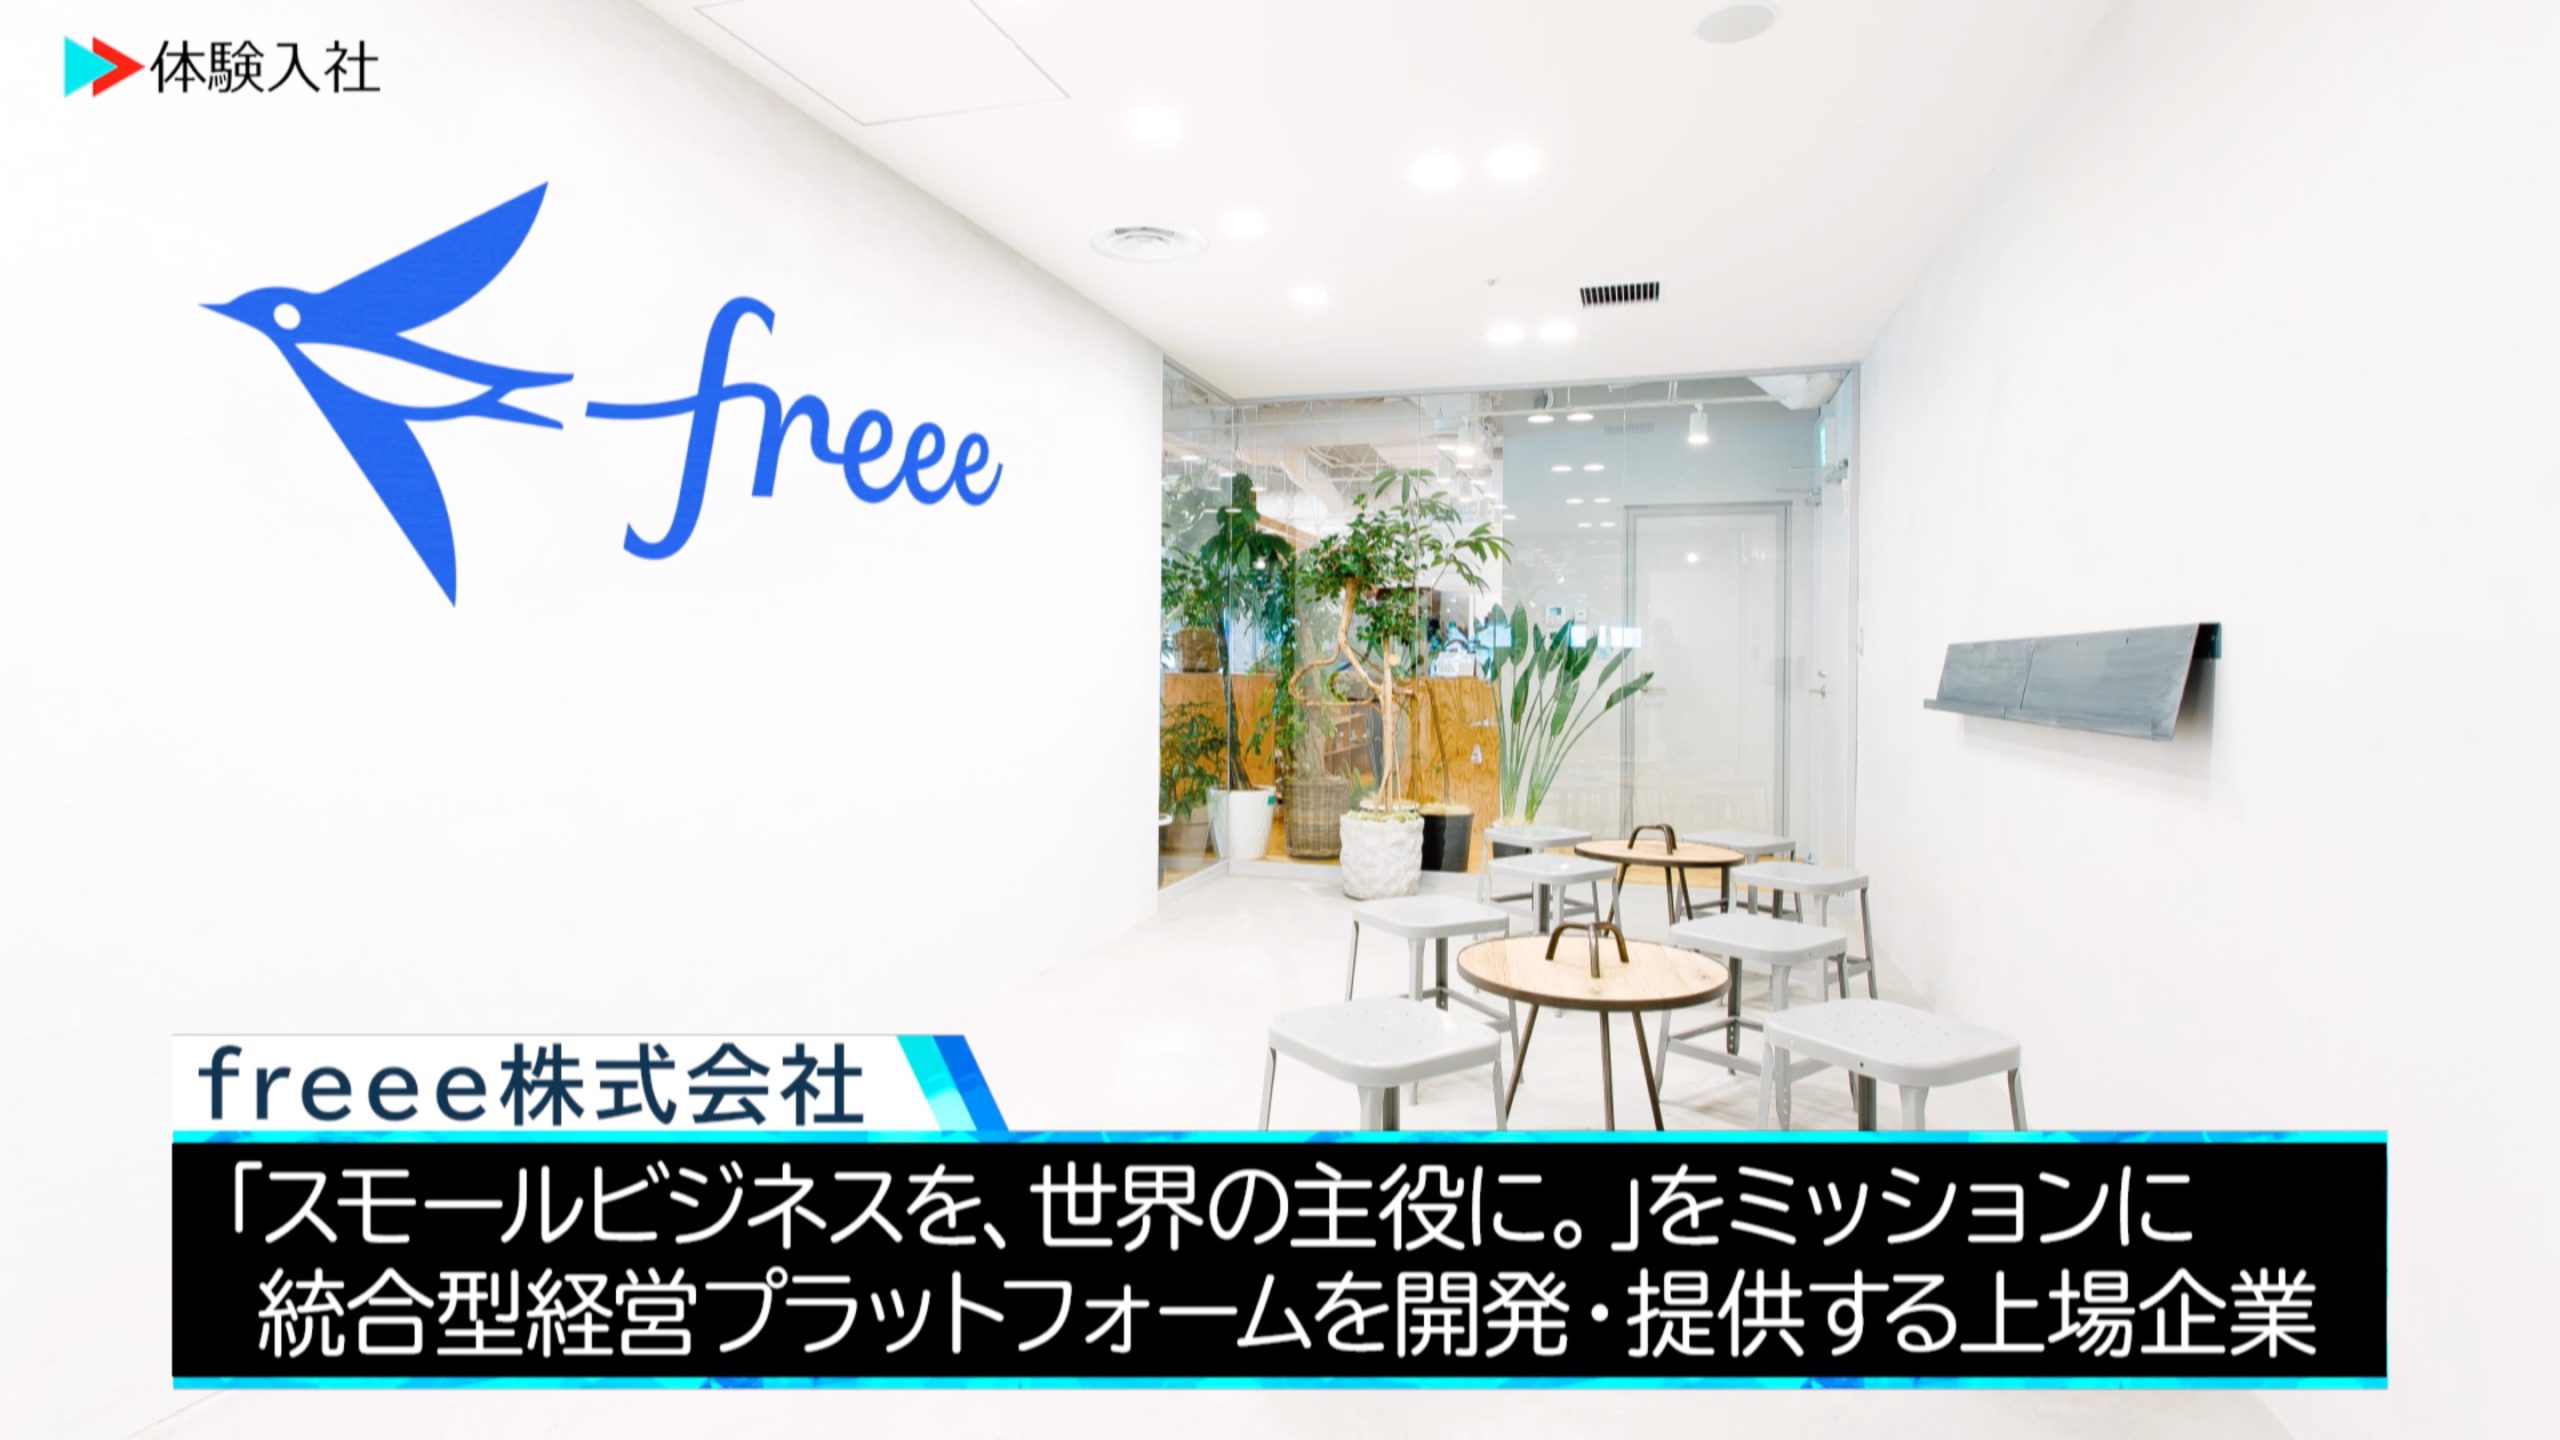 【体験入社】freee(フリー)株式会社会社情報